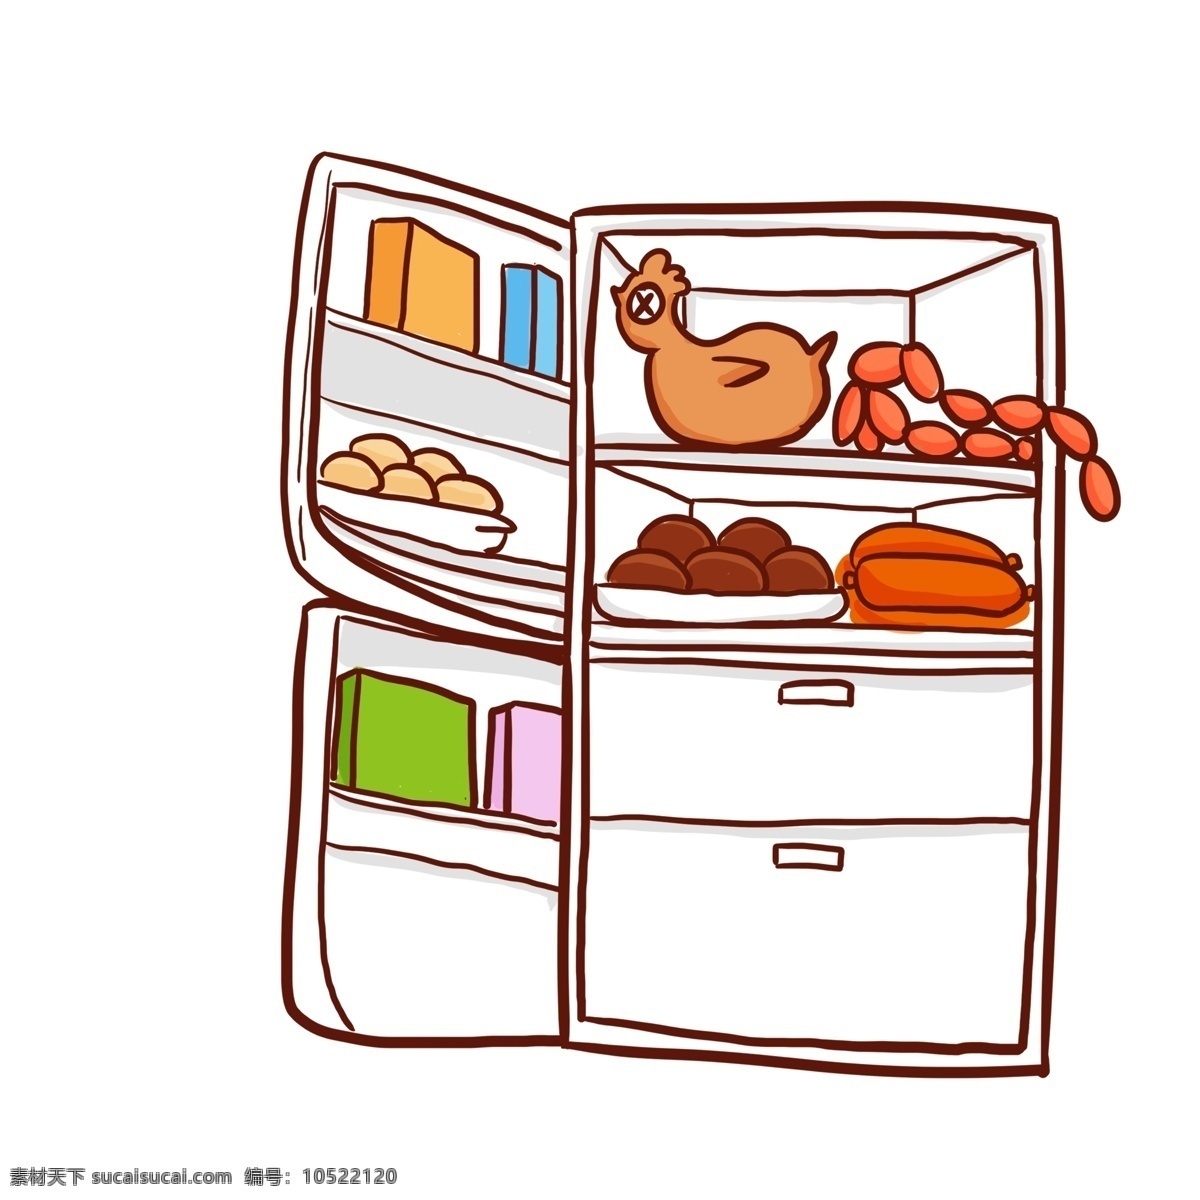 彩绘 冰箱 里 丰富 食 材 插画 彩色 食材 家居 漫画设计